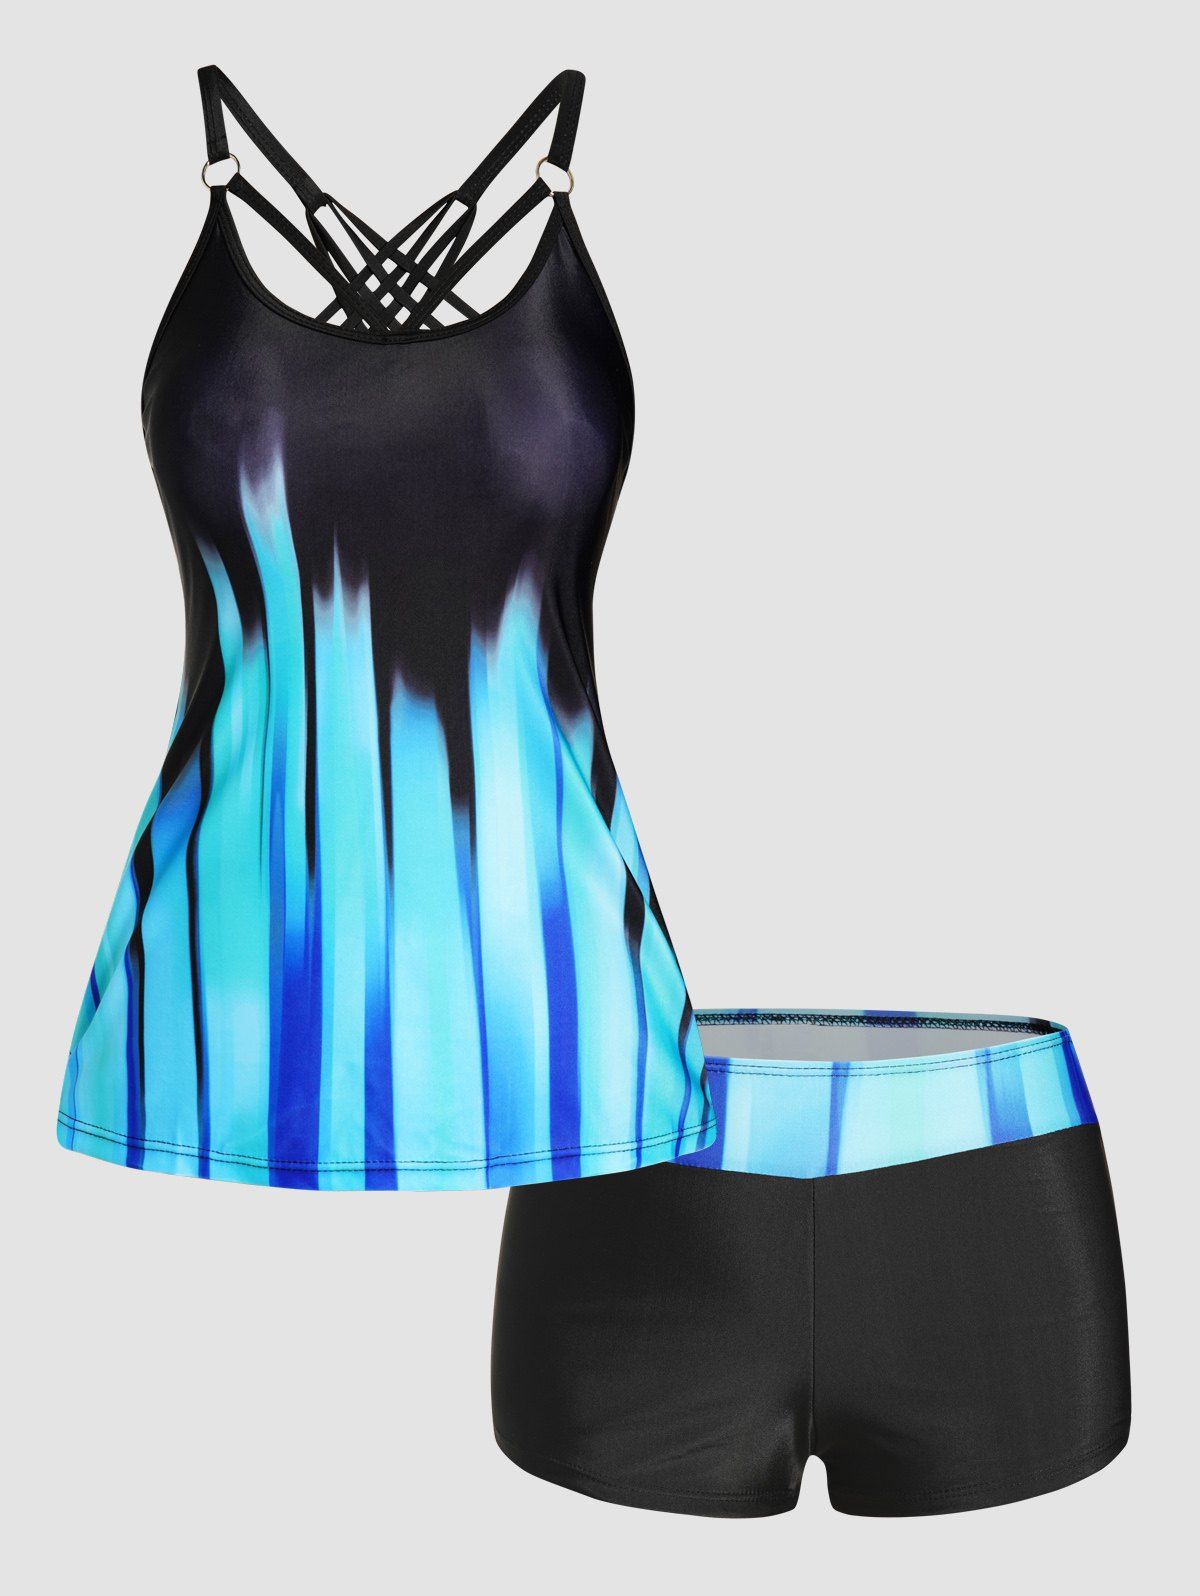 Ombre Stripe Print Tankini Swimsuit Crisscross Padded Tankini Two Piece Swimwear Boyleg Bathing Suit - BLUE M